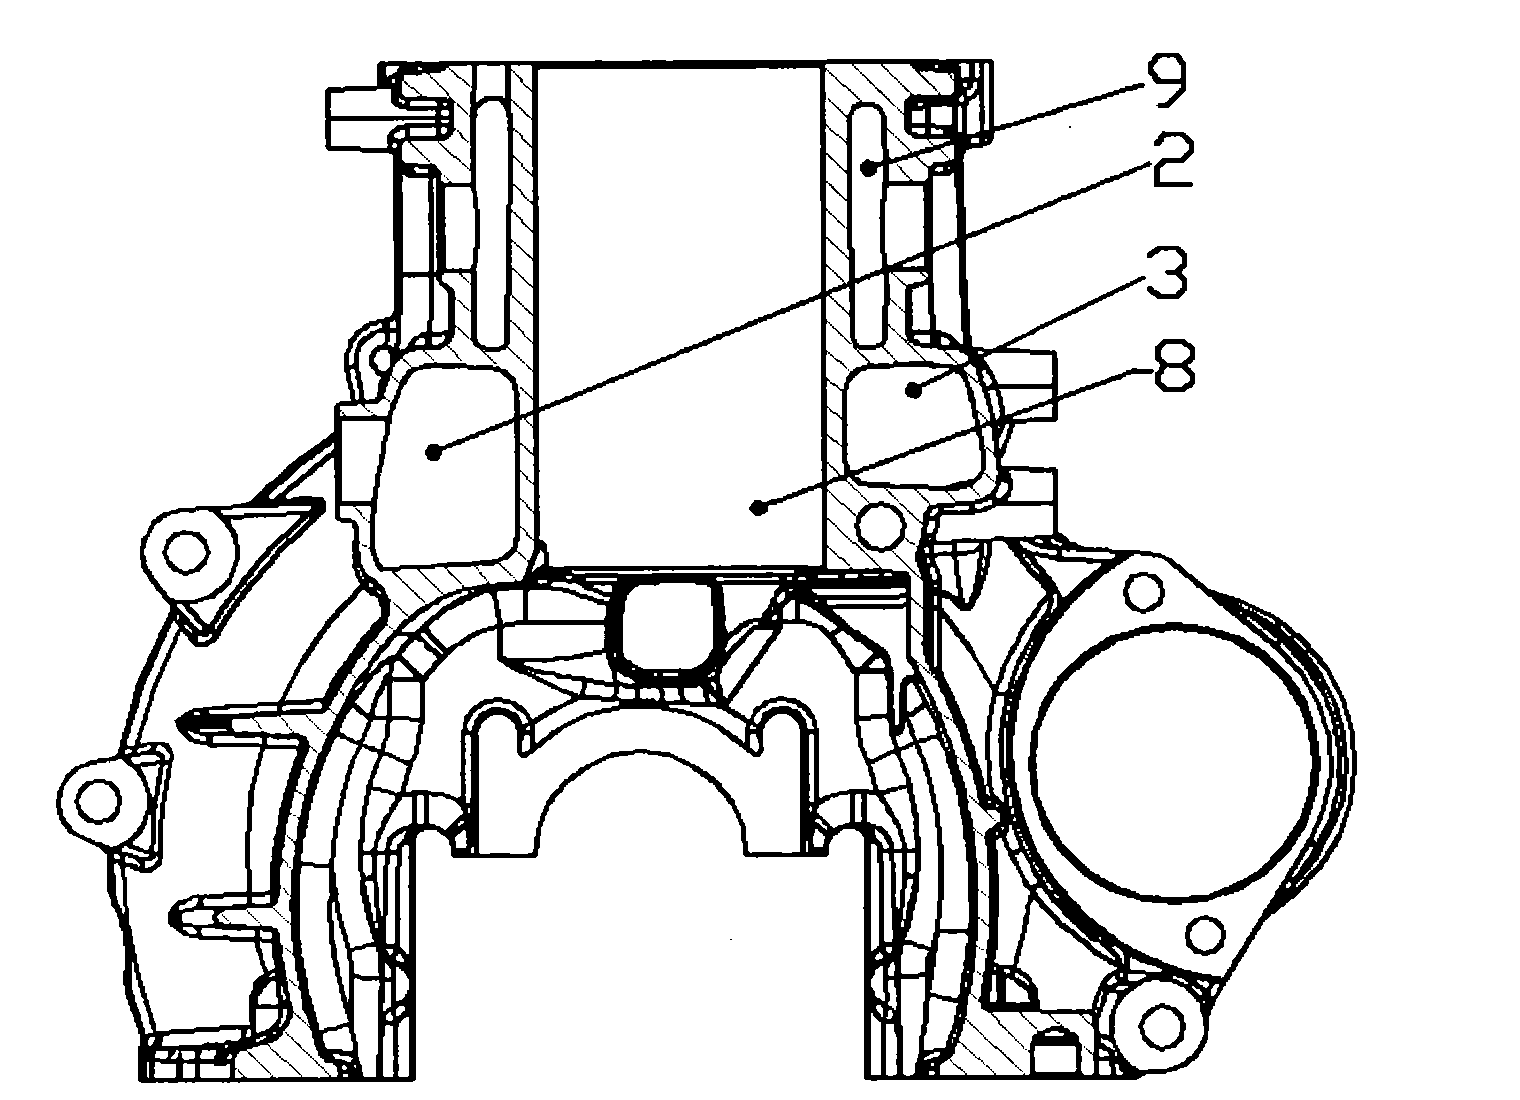 Cylinder body of diesel engine